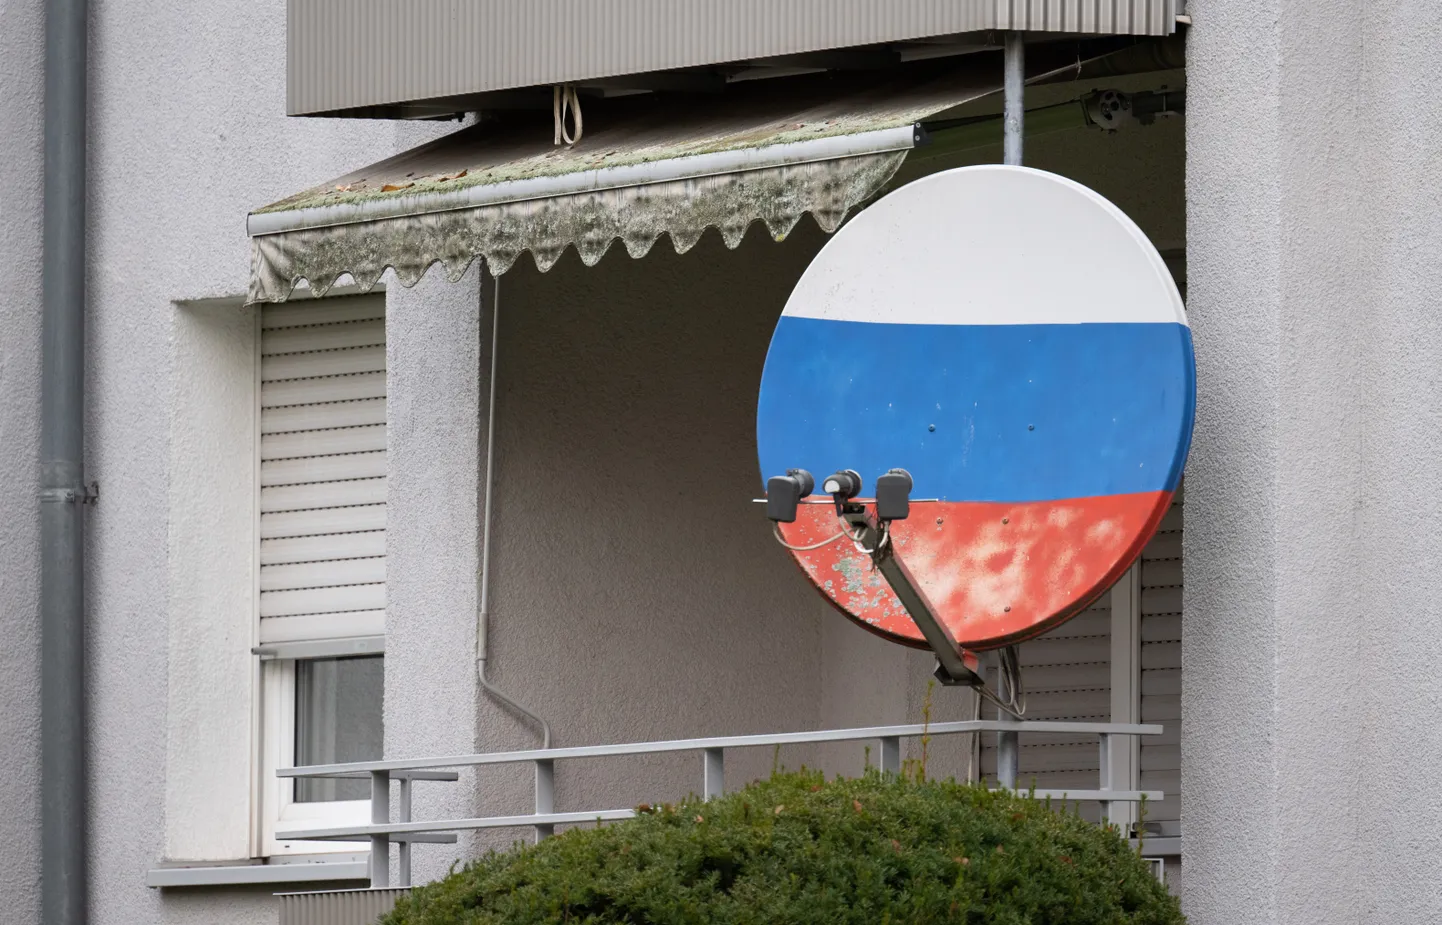 Спутниковая тарелка в цветах российского триколора.